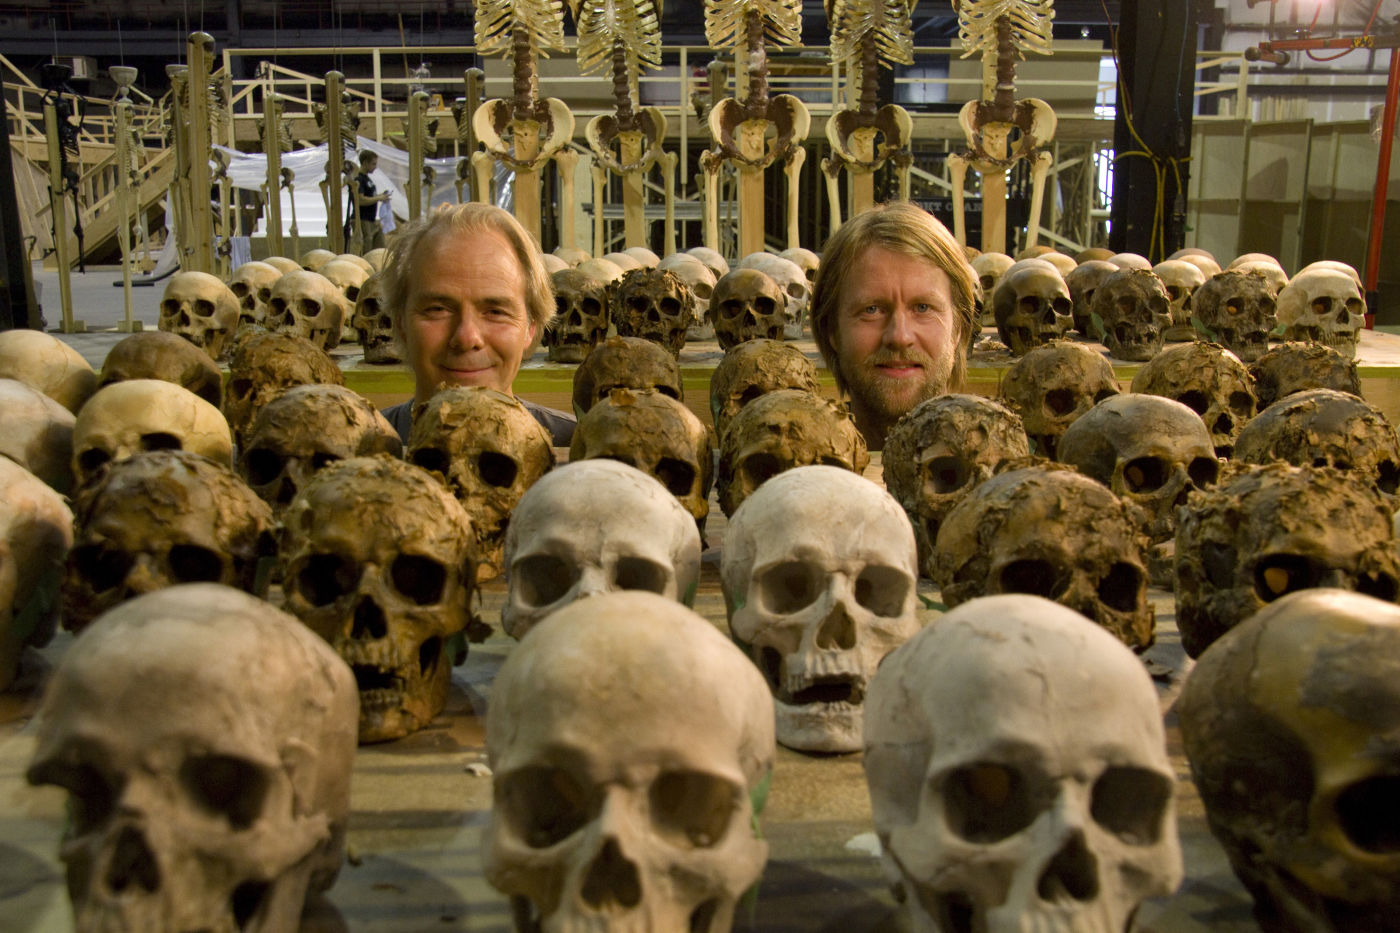 2013 The Mortal Instruments: City Of Bones